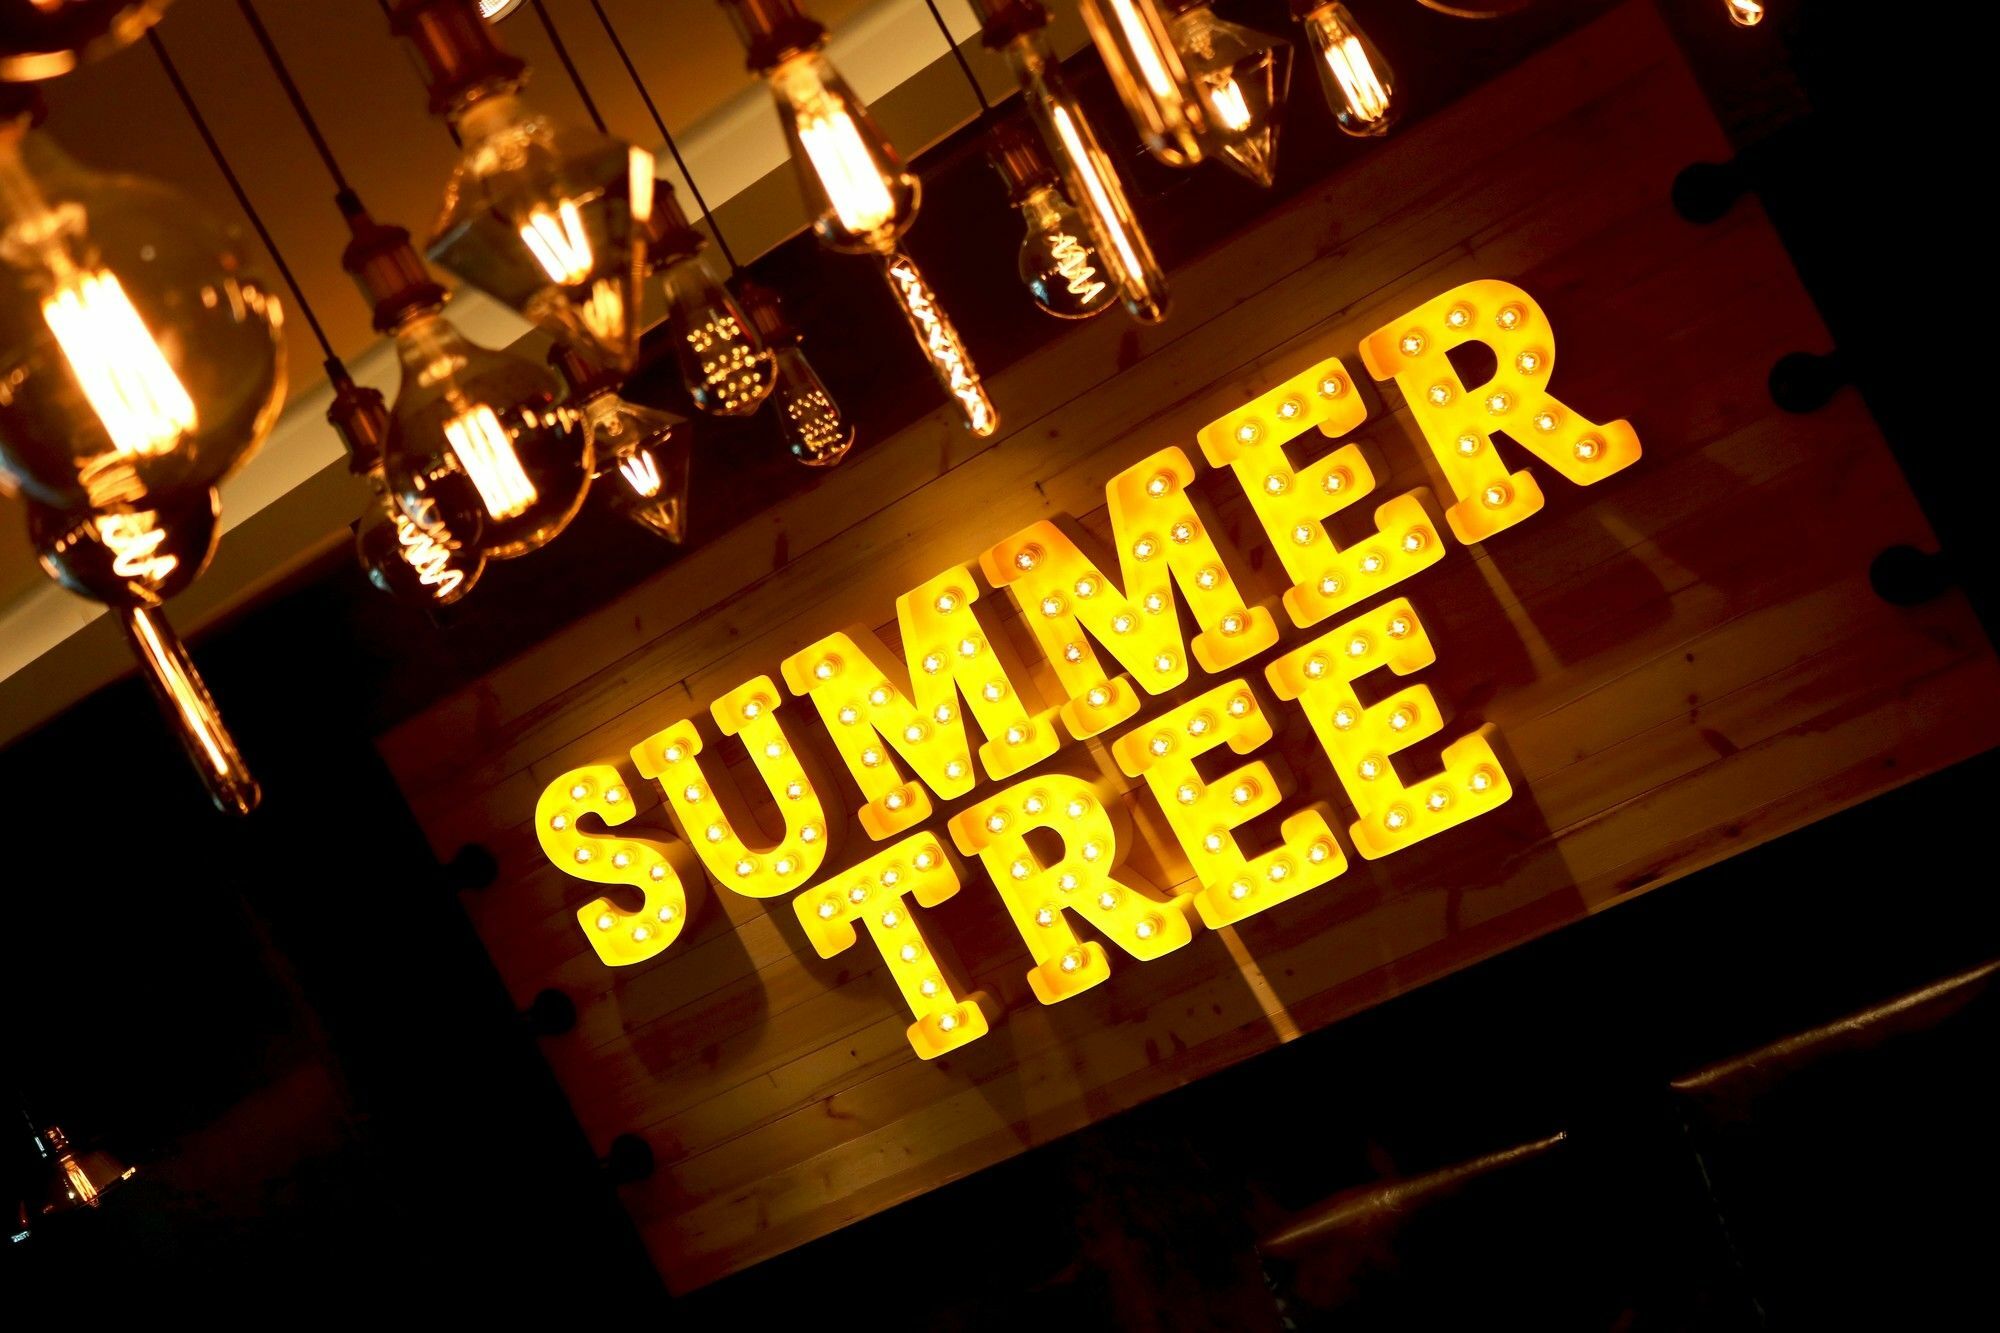 Summer Tree Hotel Penang George Town Exteriér fotografie